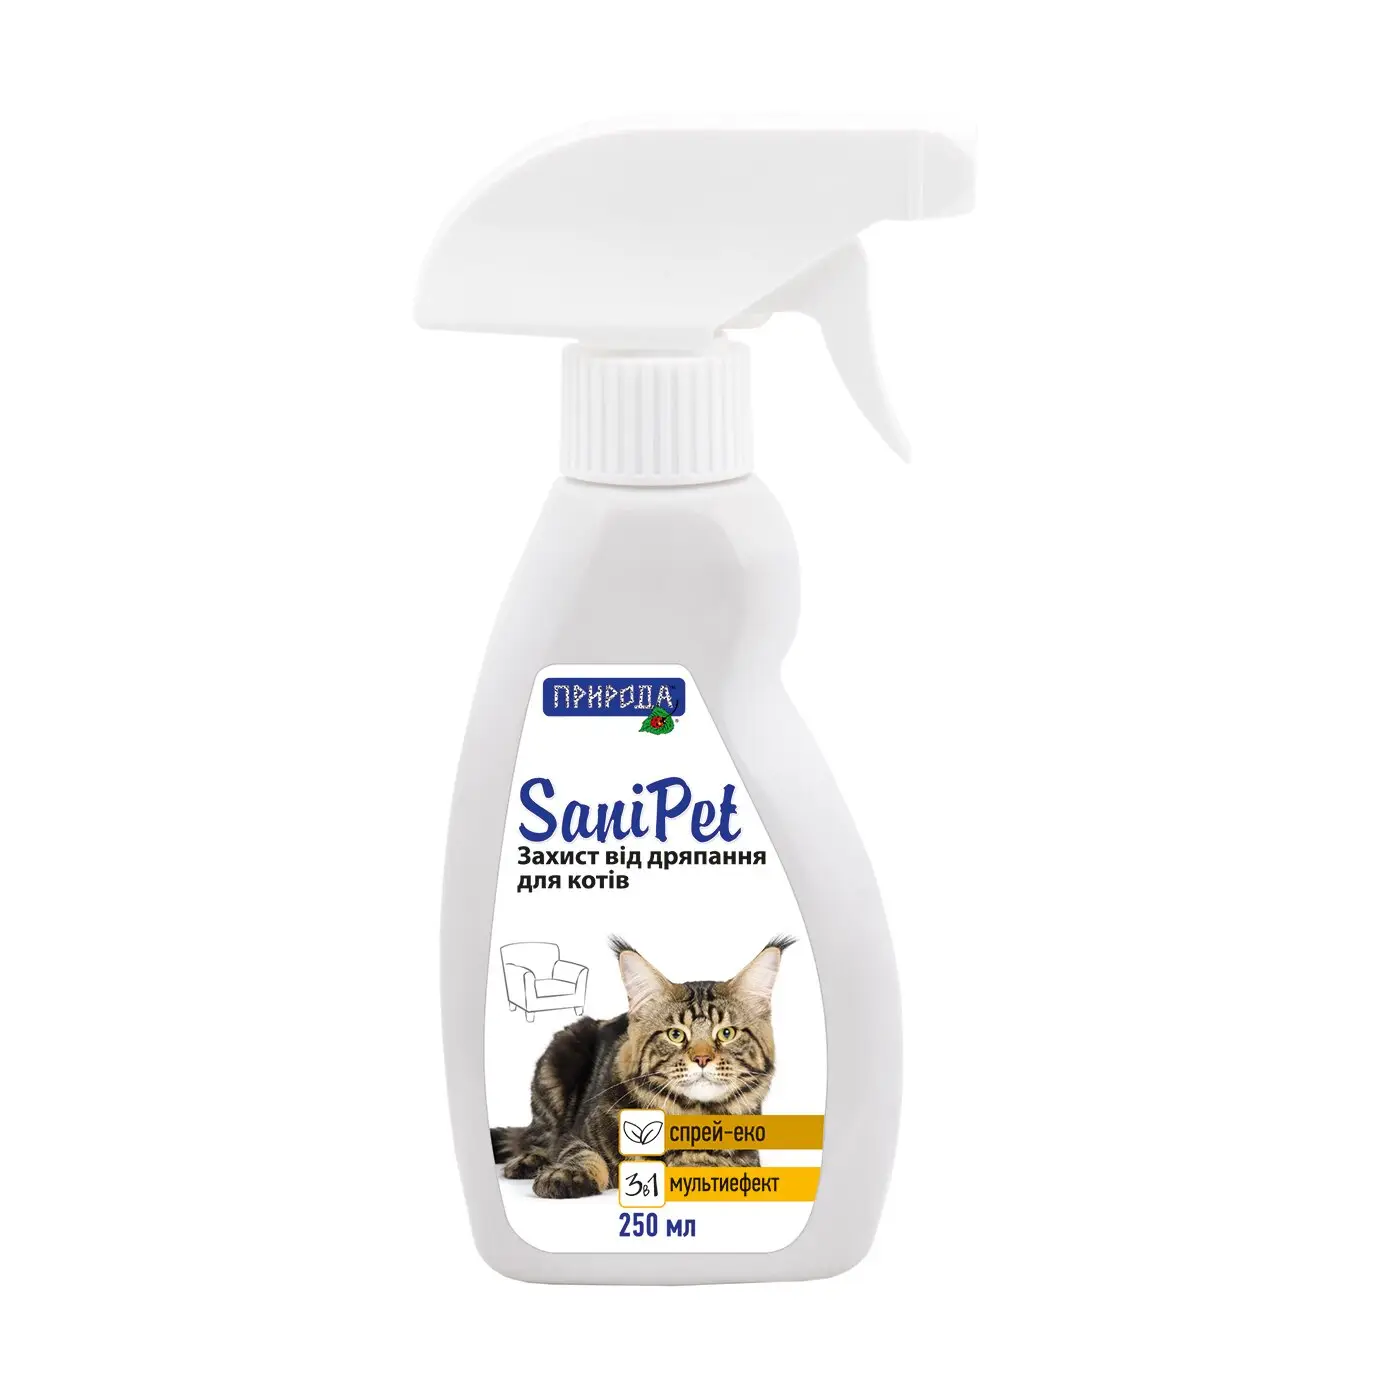 Природа Sani Pet спрей-відлякувач для кішок (для захисту від дряпання) 250 мл1